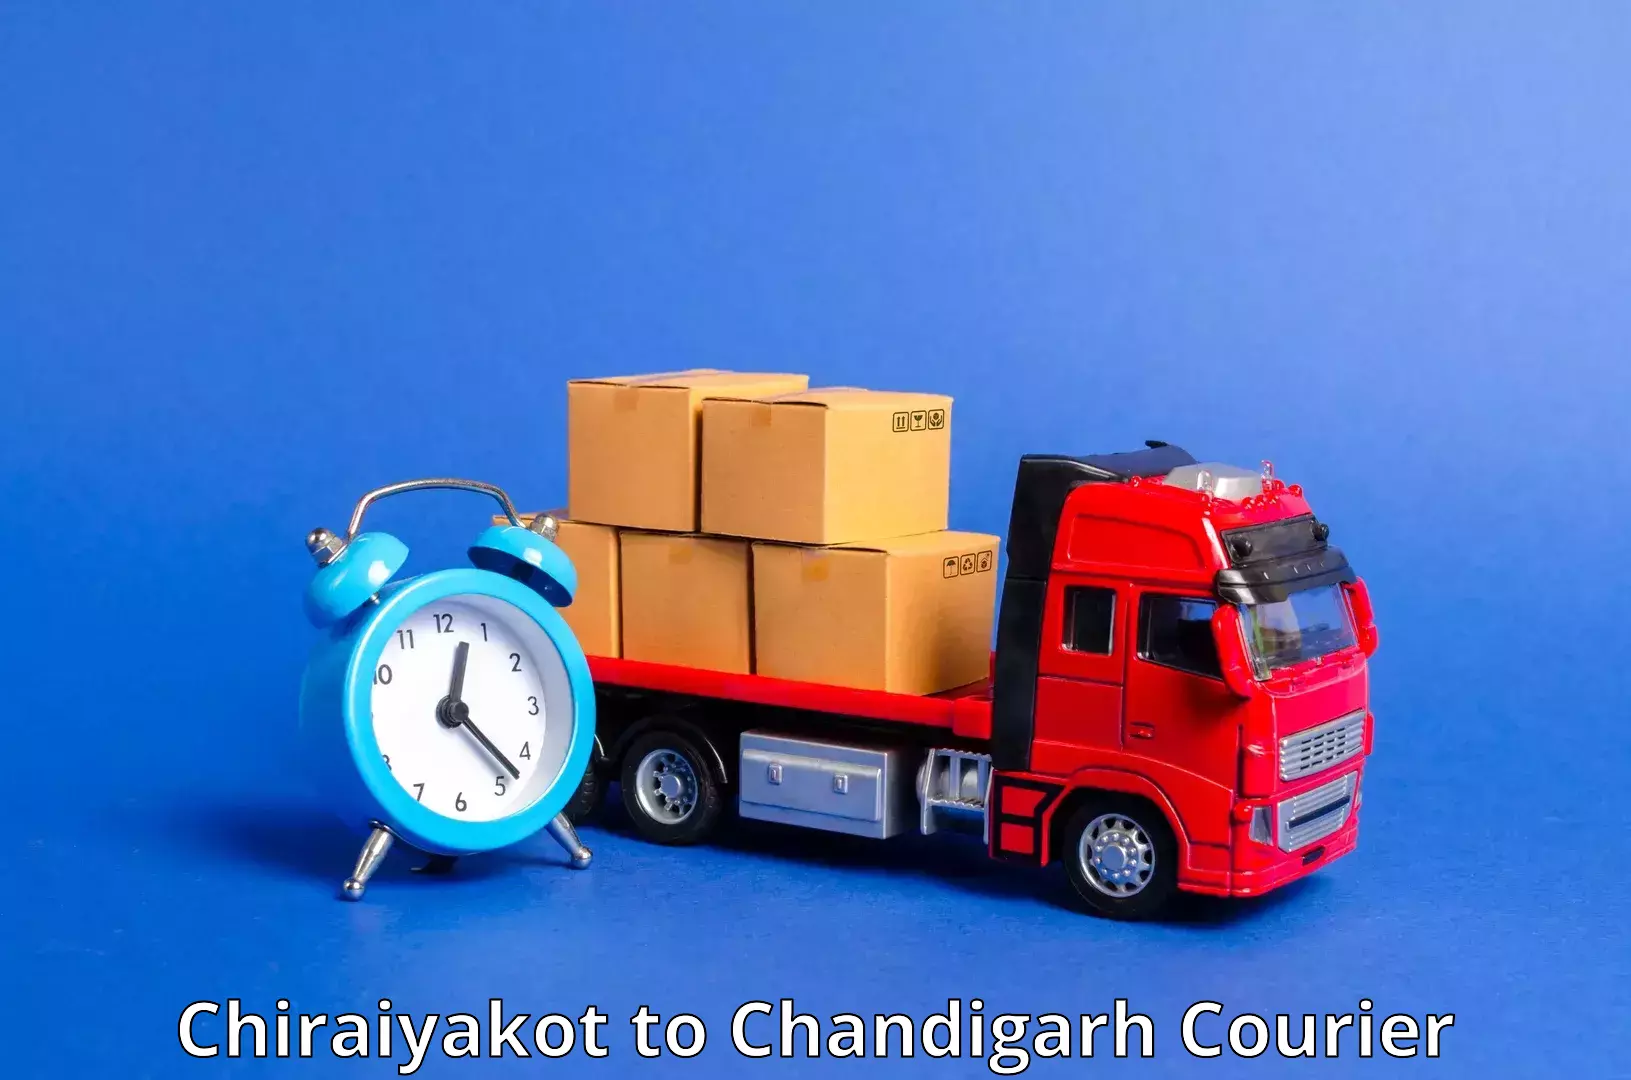 High-capacity courier solutions Chiraiyakot to Chandigarh